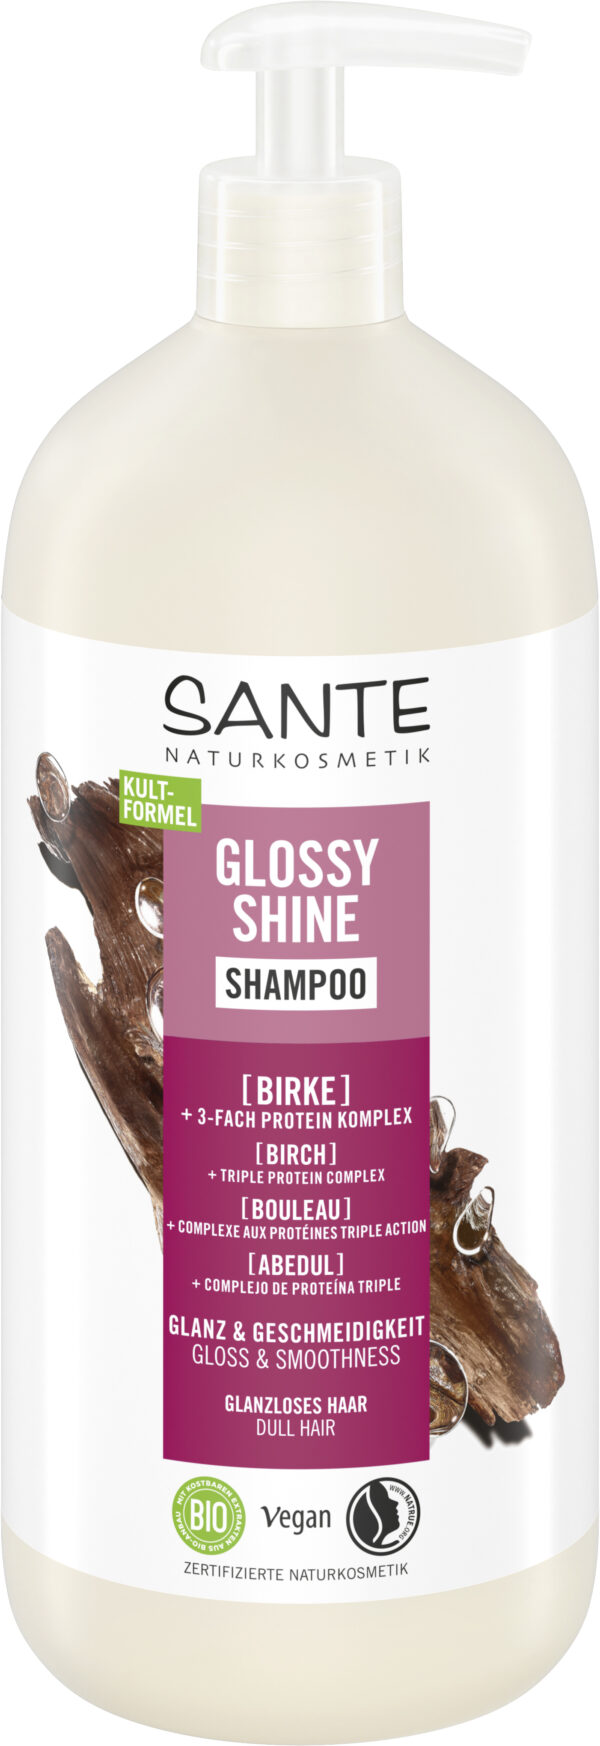 Šampón GLOSSY SHINE 950 ml